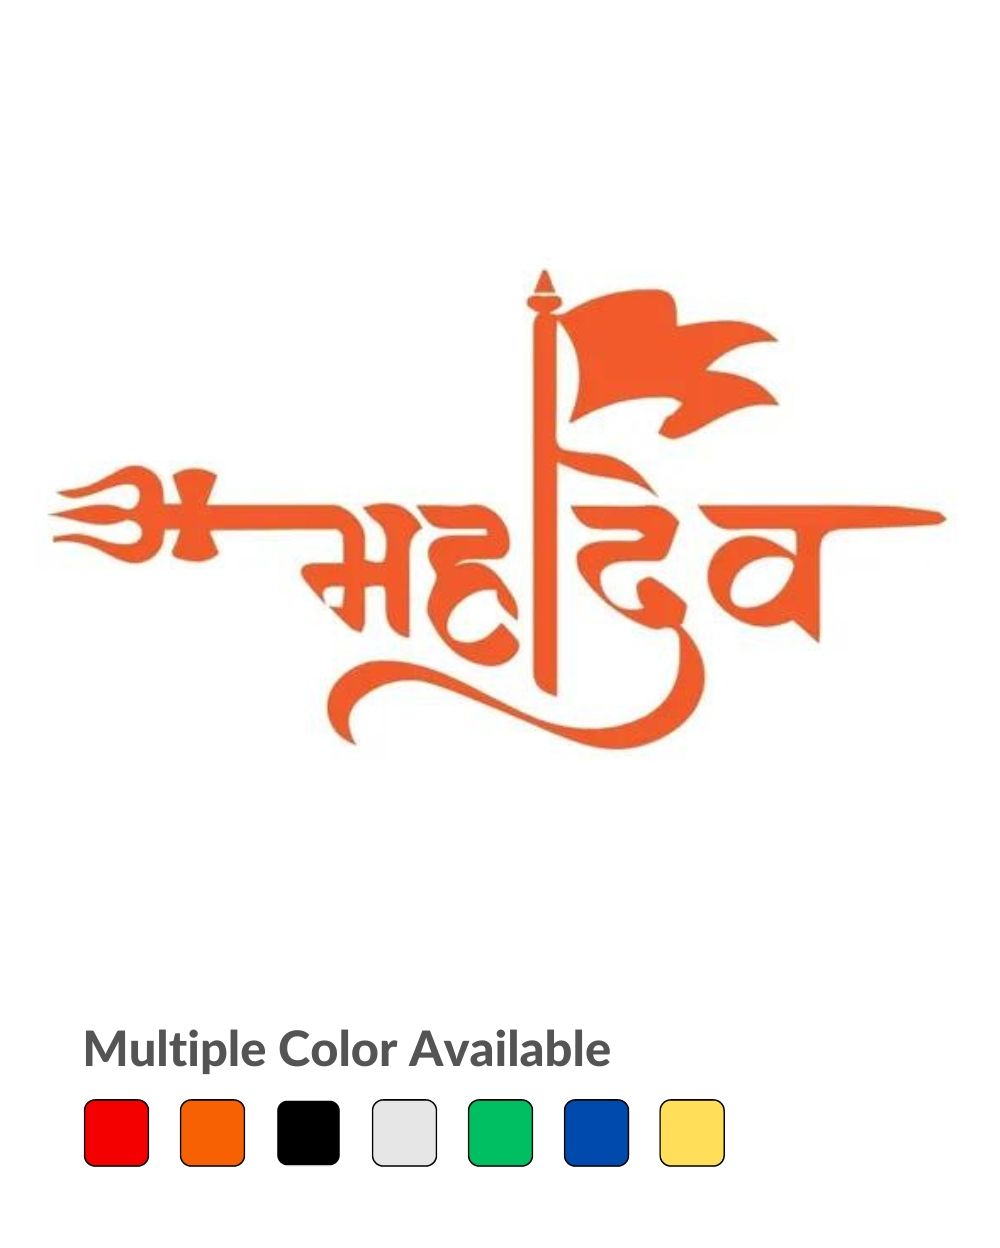 Babbu Hundal on LinkedIn: Mahadev Printing logo design